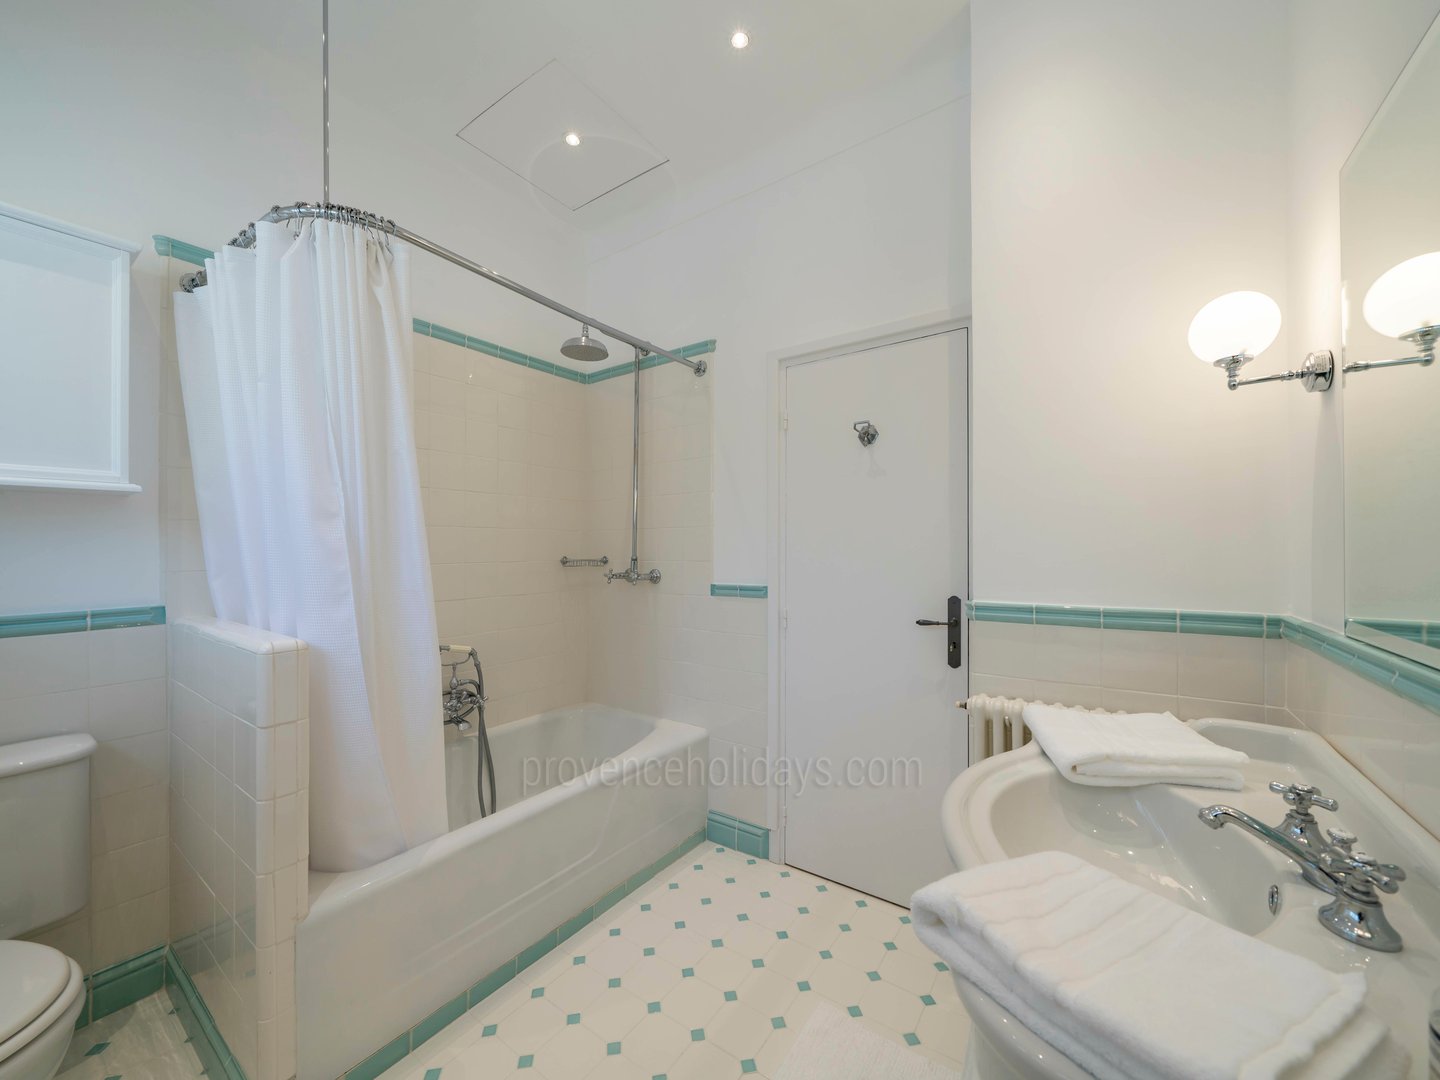 55 - Villa Riviera: Villa: Bathroom